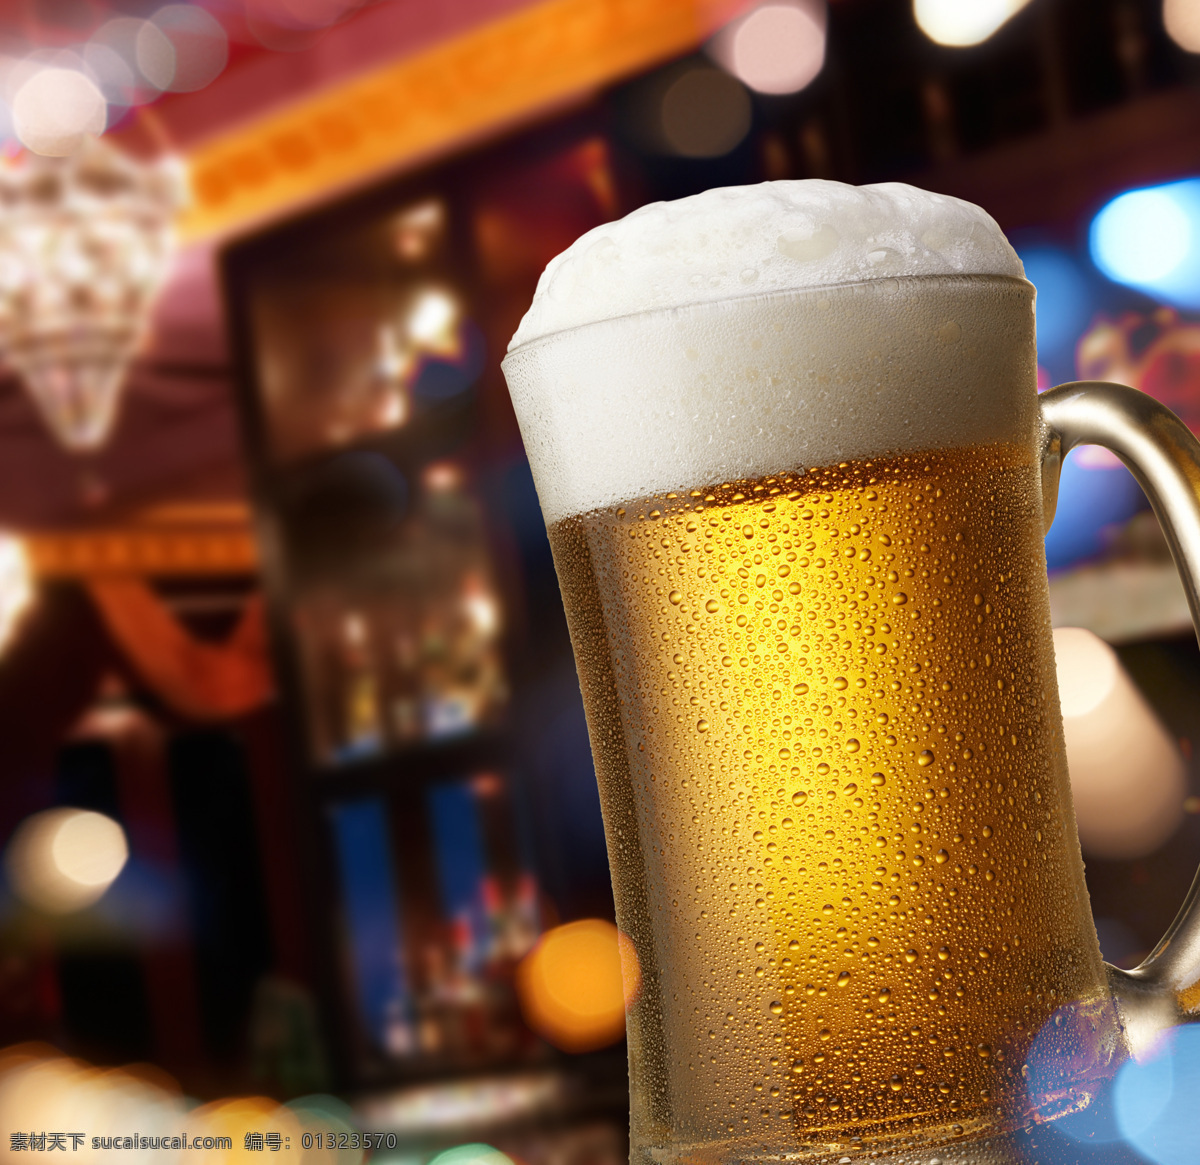 一杯 啤酒 一杯啤酒 饮料 酒水 杯子 饮料酒水 餐饮美食 酒类图片